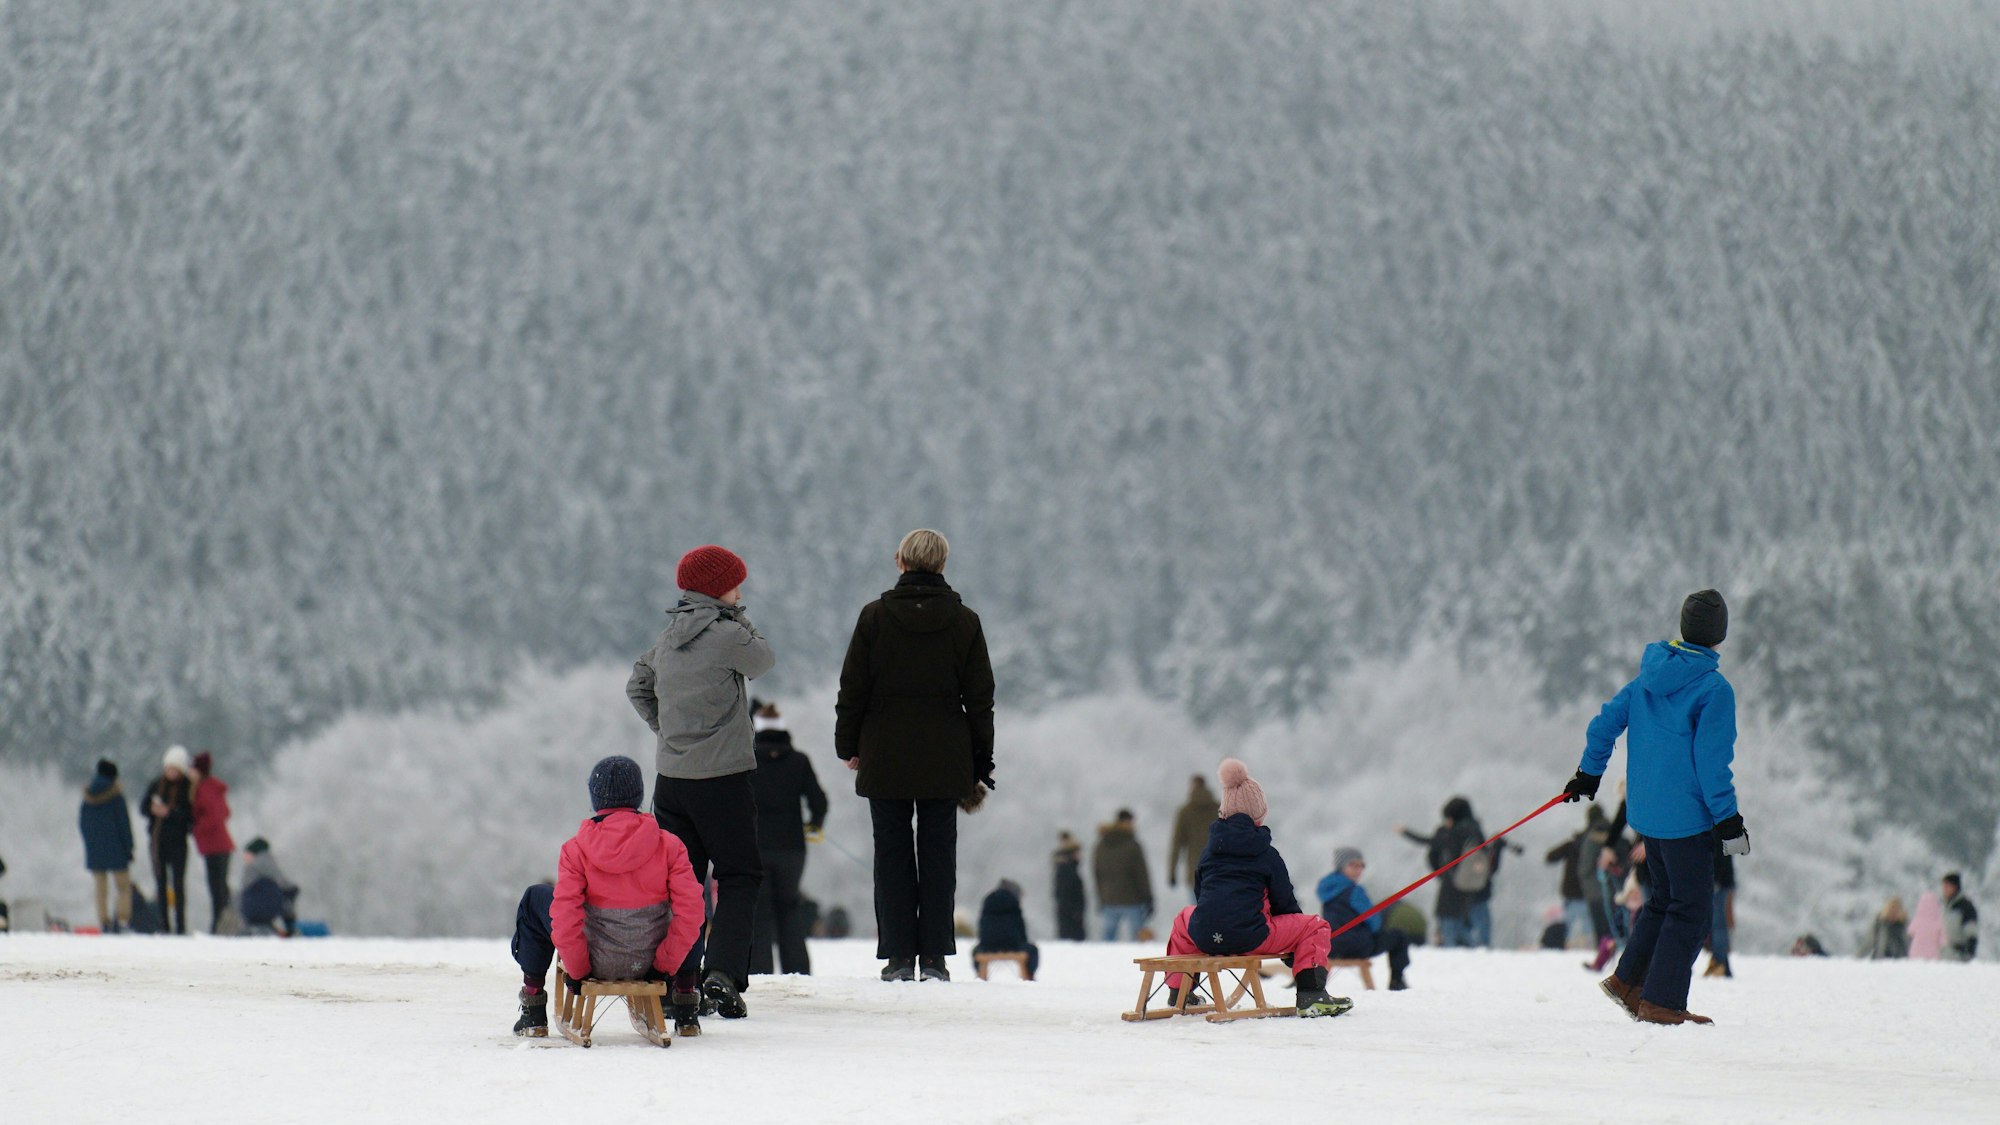 Spaziergänger und Rodler genießen das weiße Winterwetter vor der Kulisse eines verschneiten Waldes.